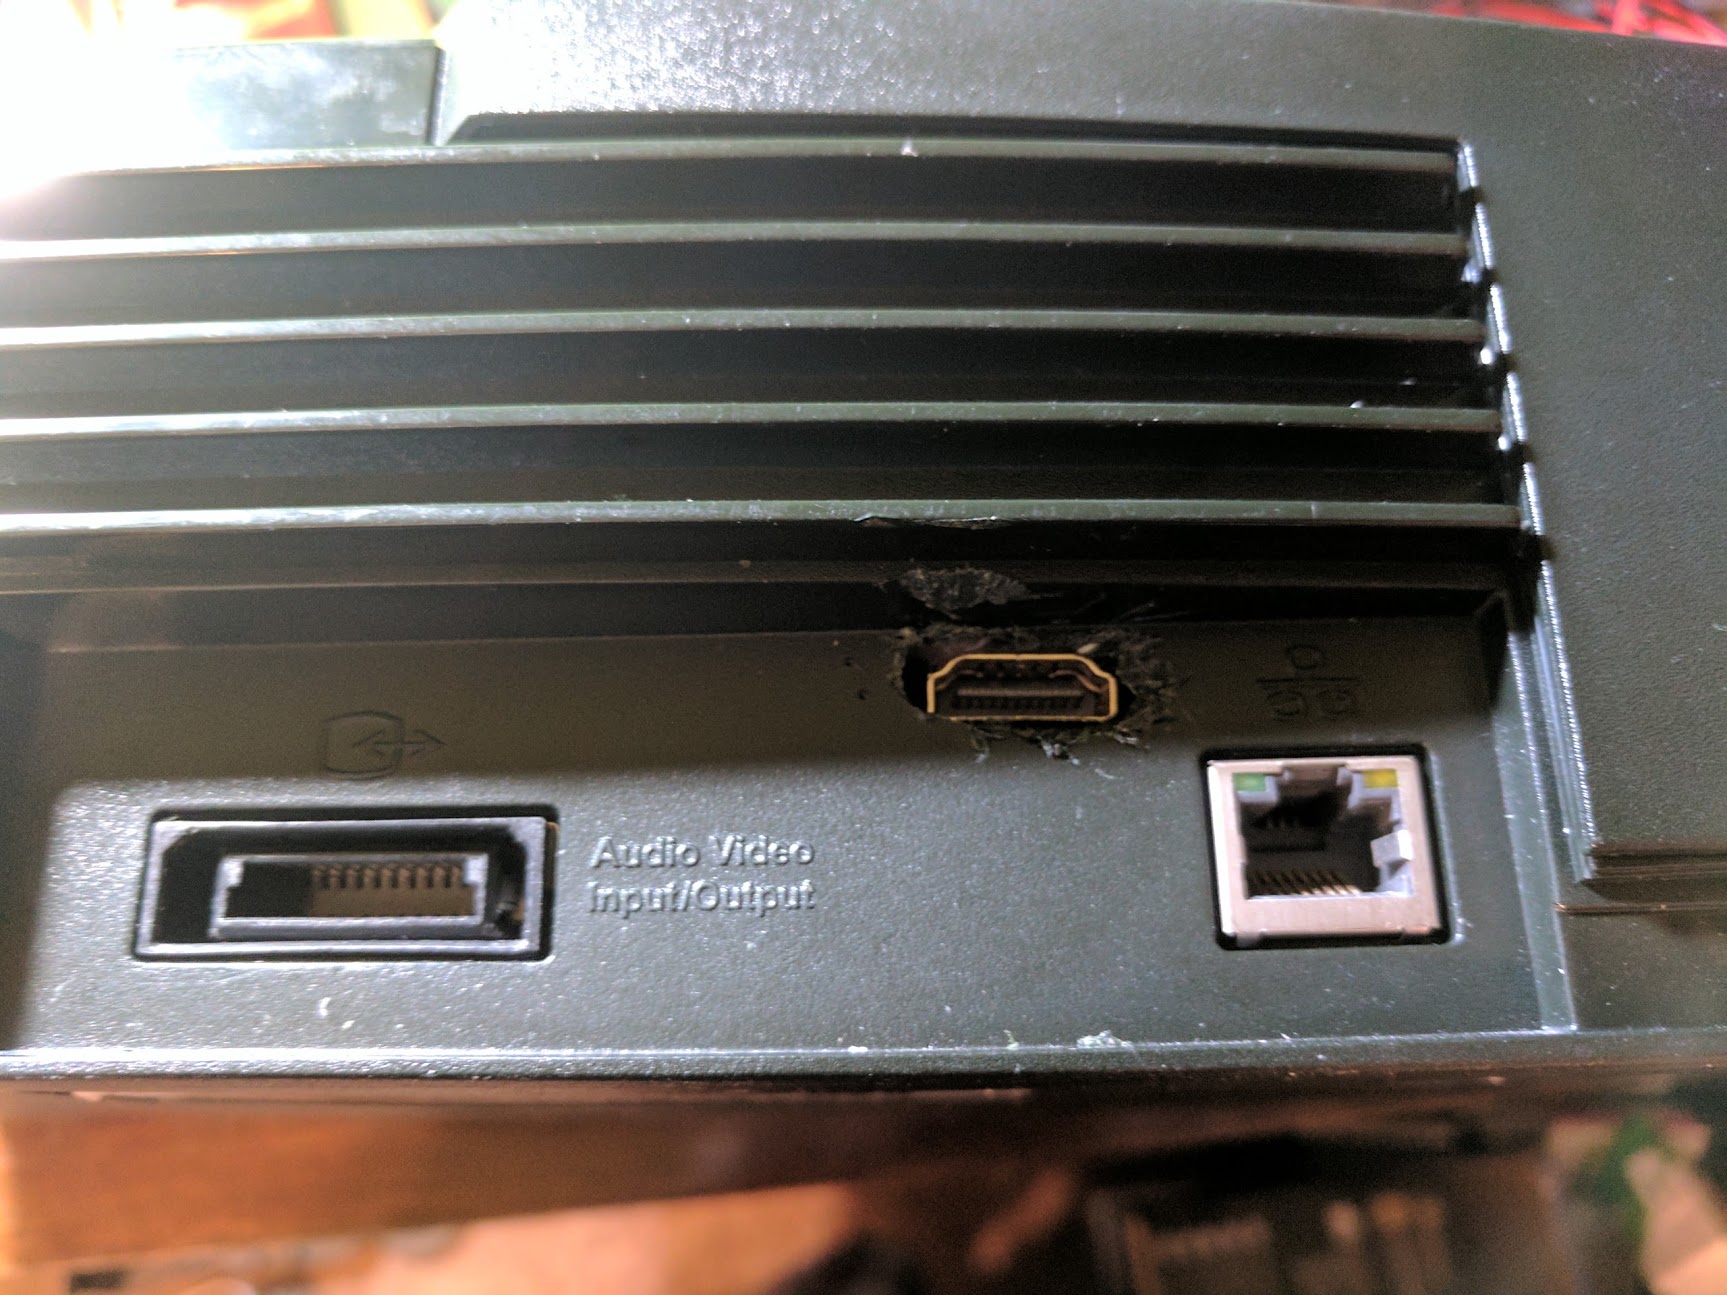 Adding an HDMI port to the original Xbox